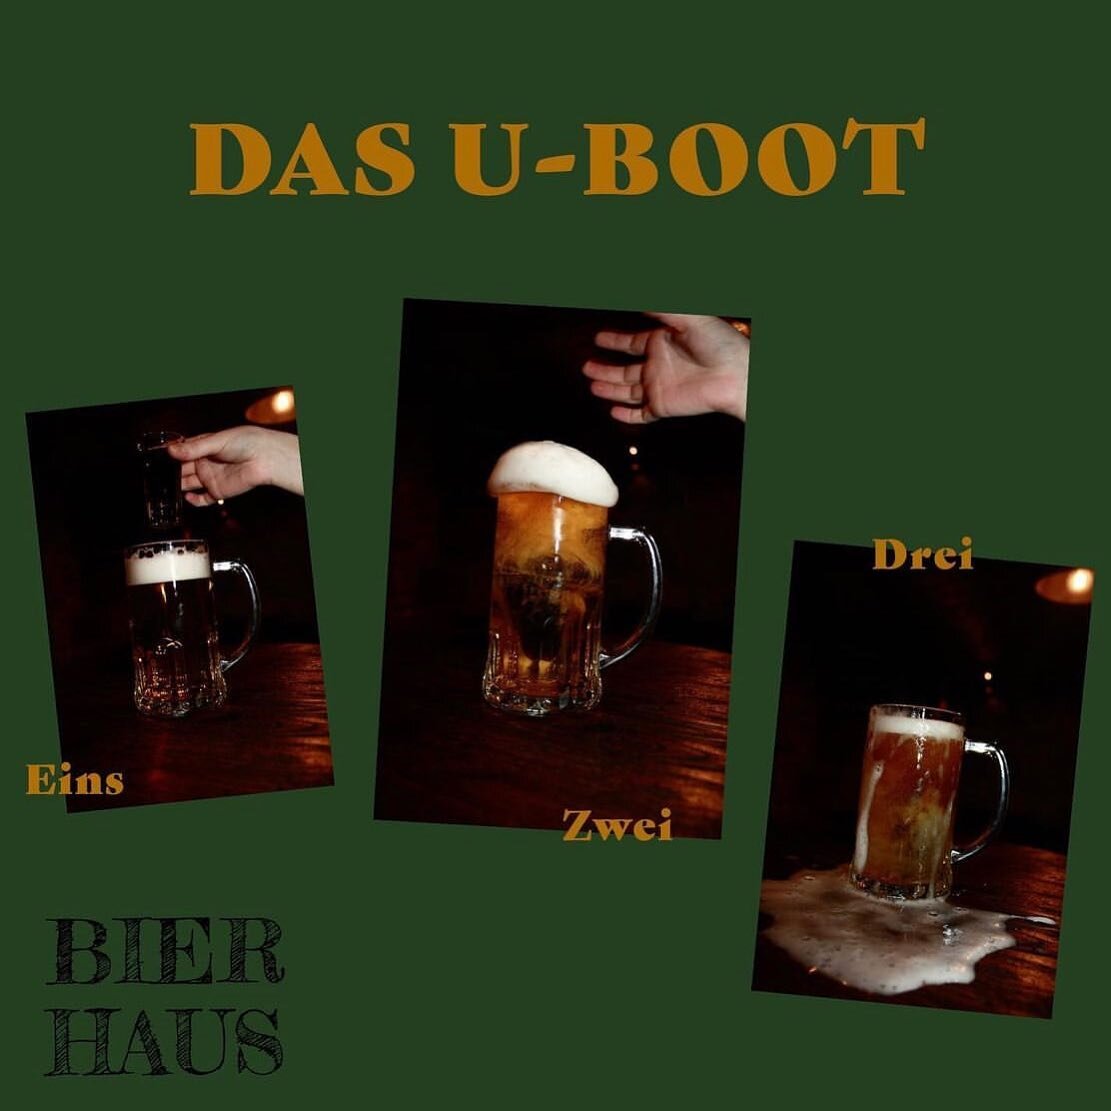 BIER + J&Auml;GER = U-BOOT 🚀🍻💥
Perfekt kombo f&ouml;r att fira in att det &auml;r HELG! 

WILLKOMMEN till Bierhaus! 

#bierhauslkpg #link&ouml;ping #bier #j&auml;germeister #tysk